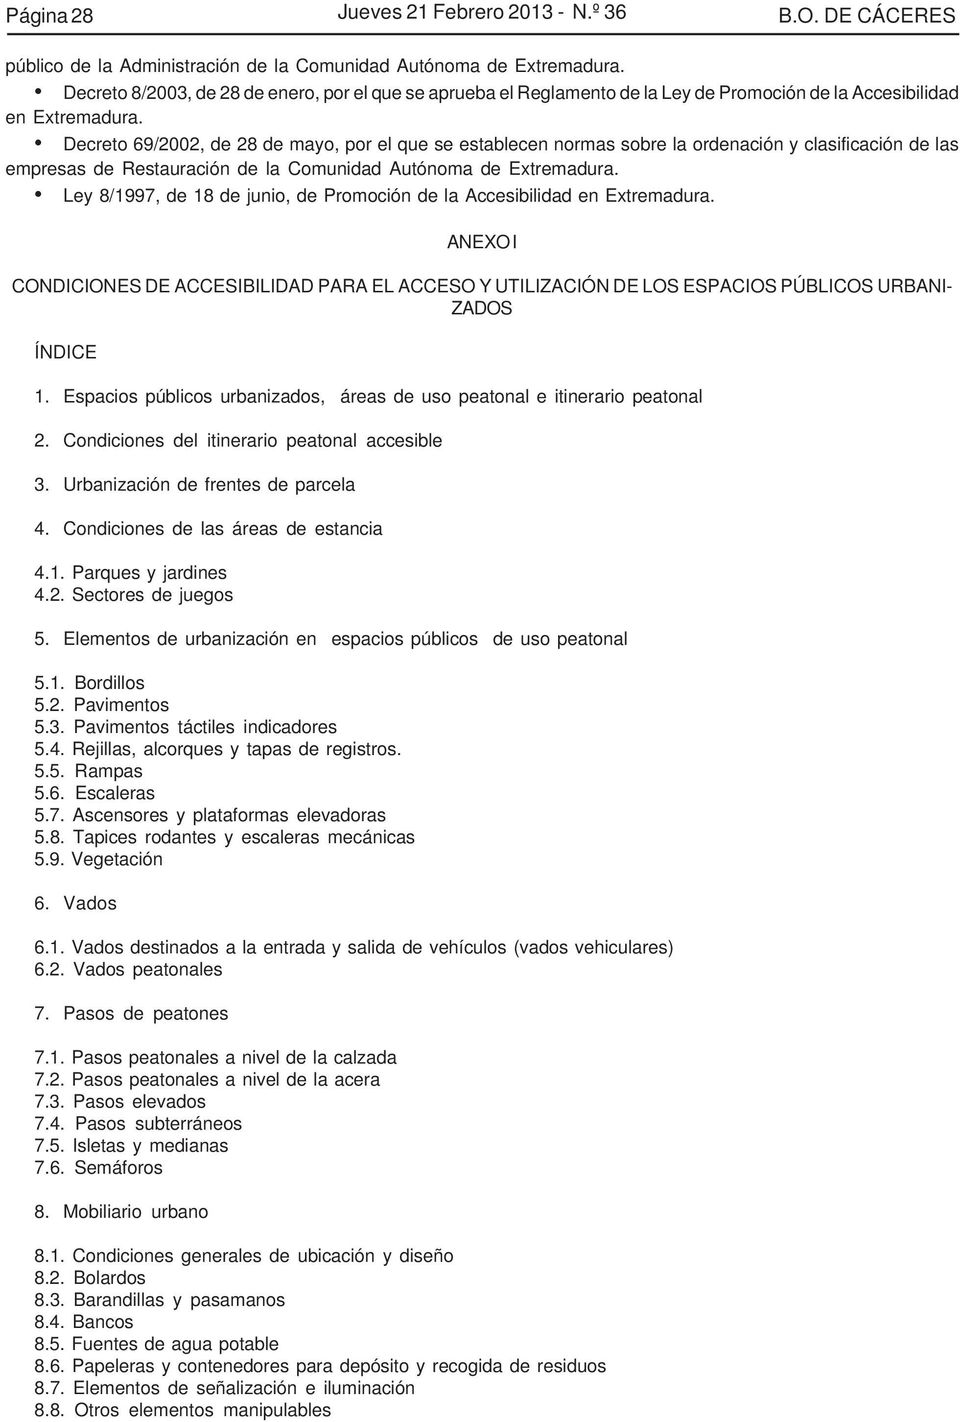 Decreto 69/2002, de 28 de mayo, por el que se establecen normas sobre la ordenación y clasificación de las empresas de Restauración de la Comunidad Autónoma de Extremadura.